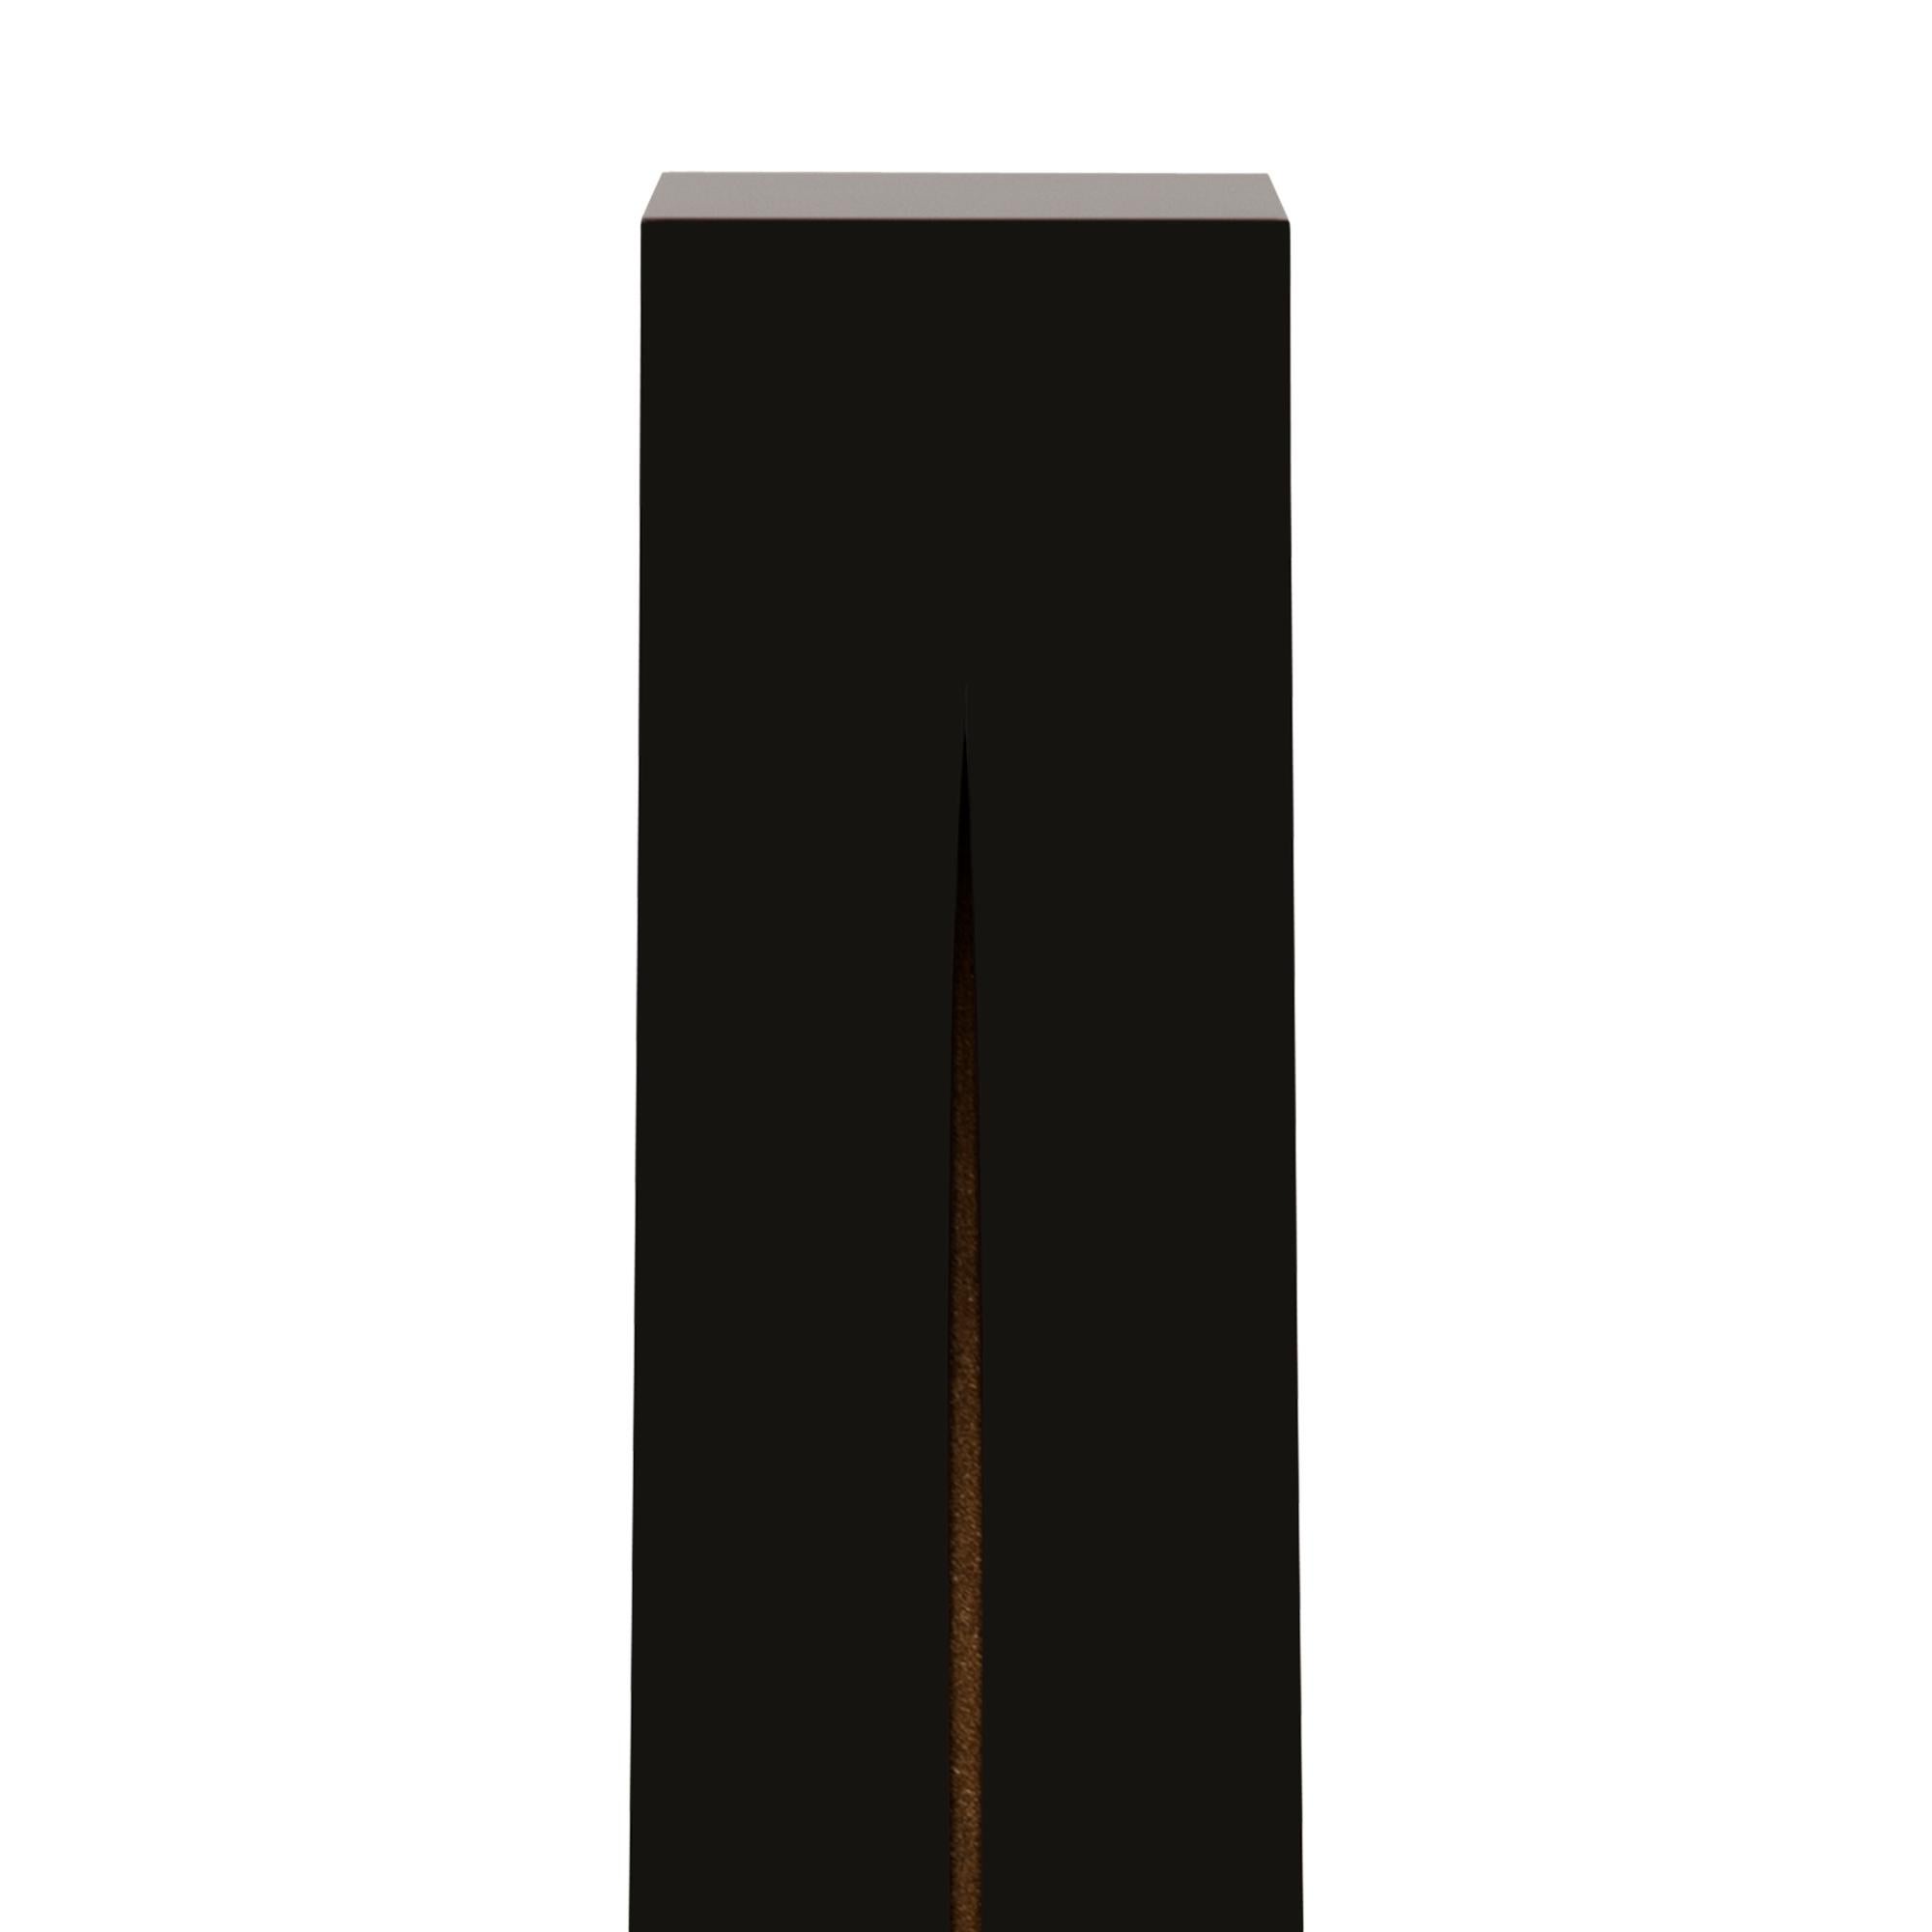 Säule oder Sockel schwarze Säule aus massivem handgeschnitztem Holz
in schwarz lackierter Ausführung. Mit einem Seidenschnitt, der in die
oberfläche auf einer Vorderseite, Seide in geschliffener Goldoptik.
Säule auf Holzsockel.
Auch erhältlich